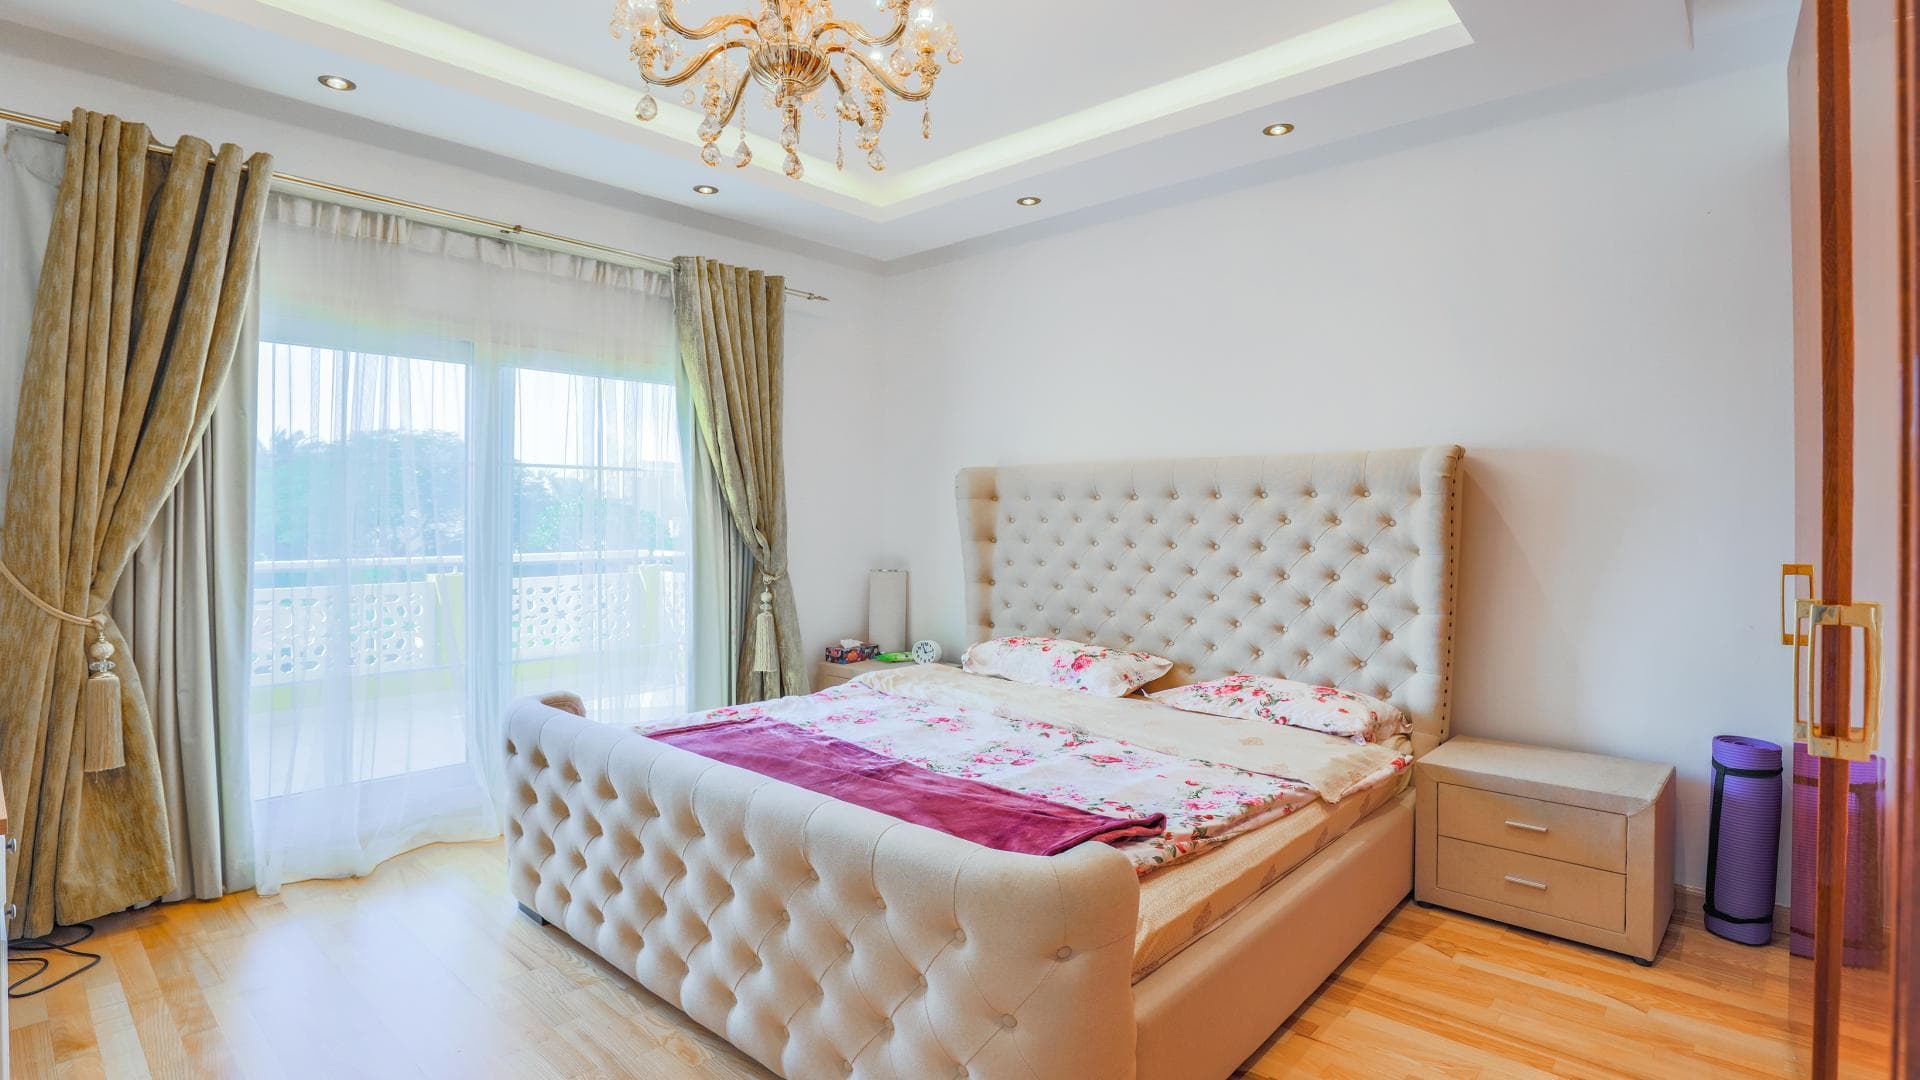 6 Bedroom Villa For Rent  Lp38936 1fec859898494100.jpg